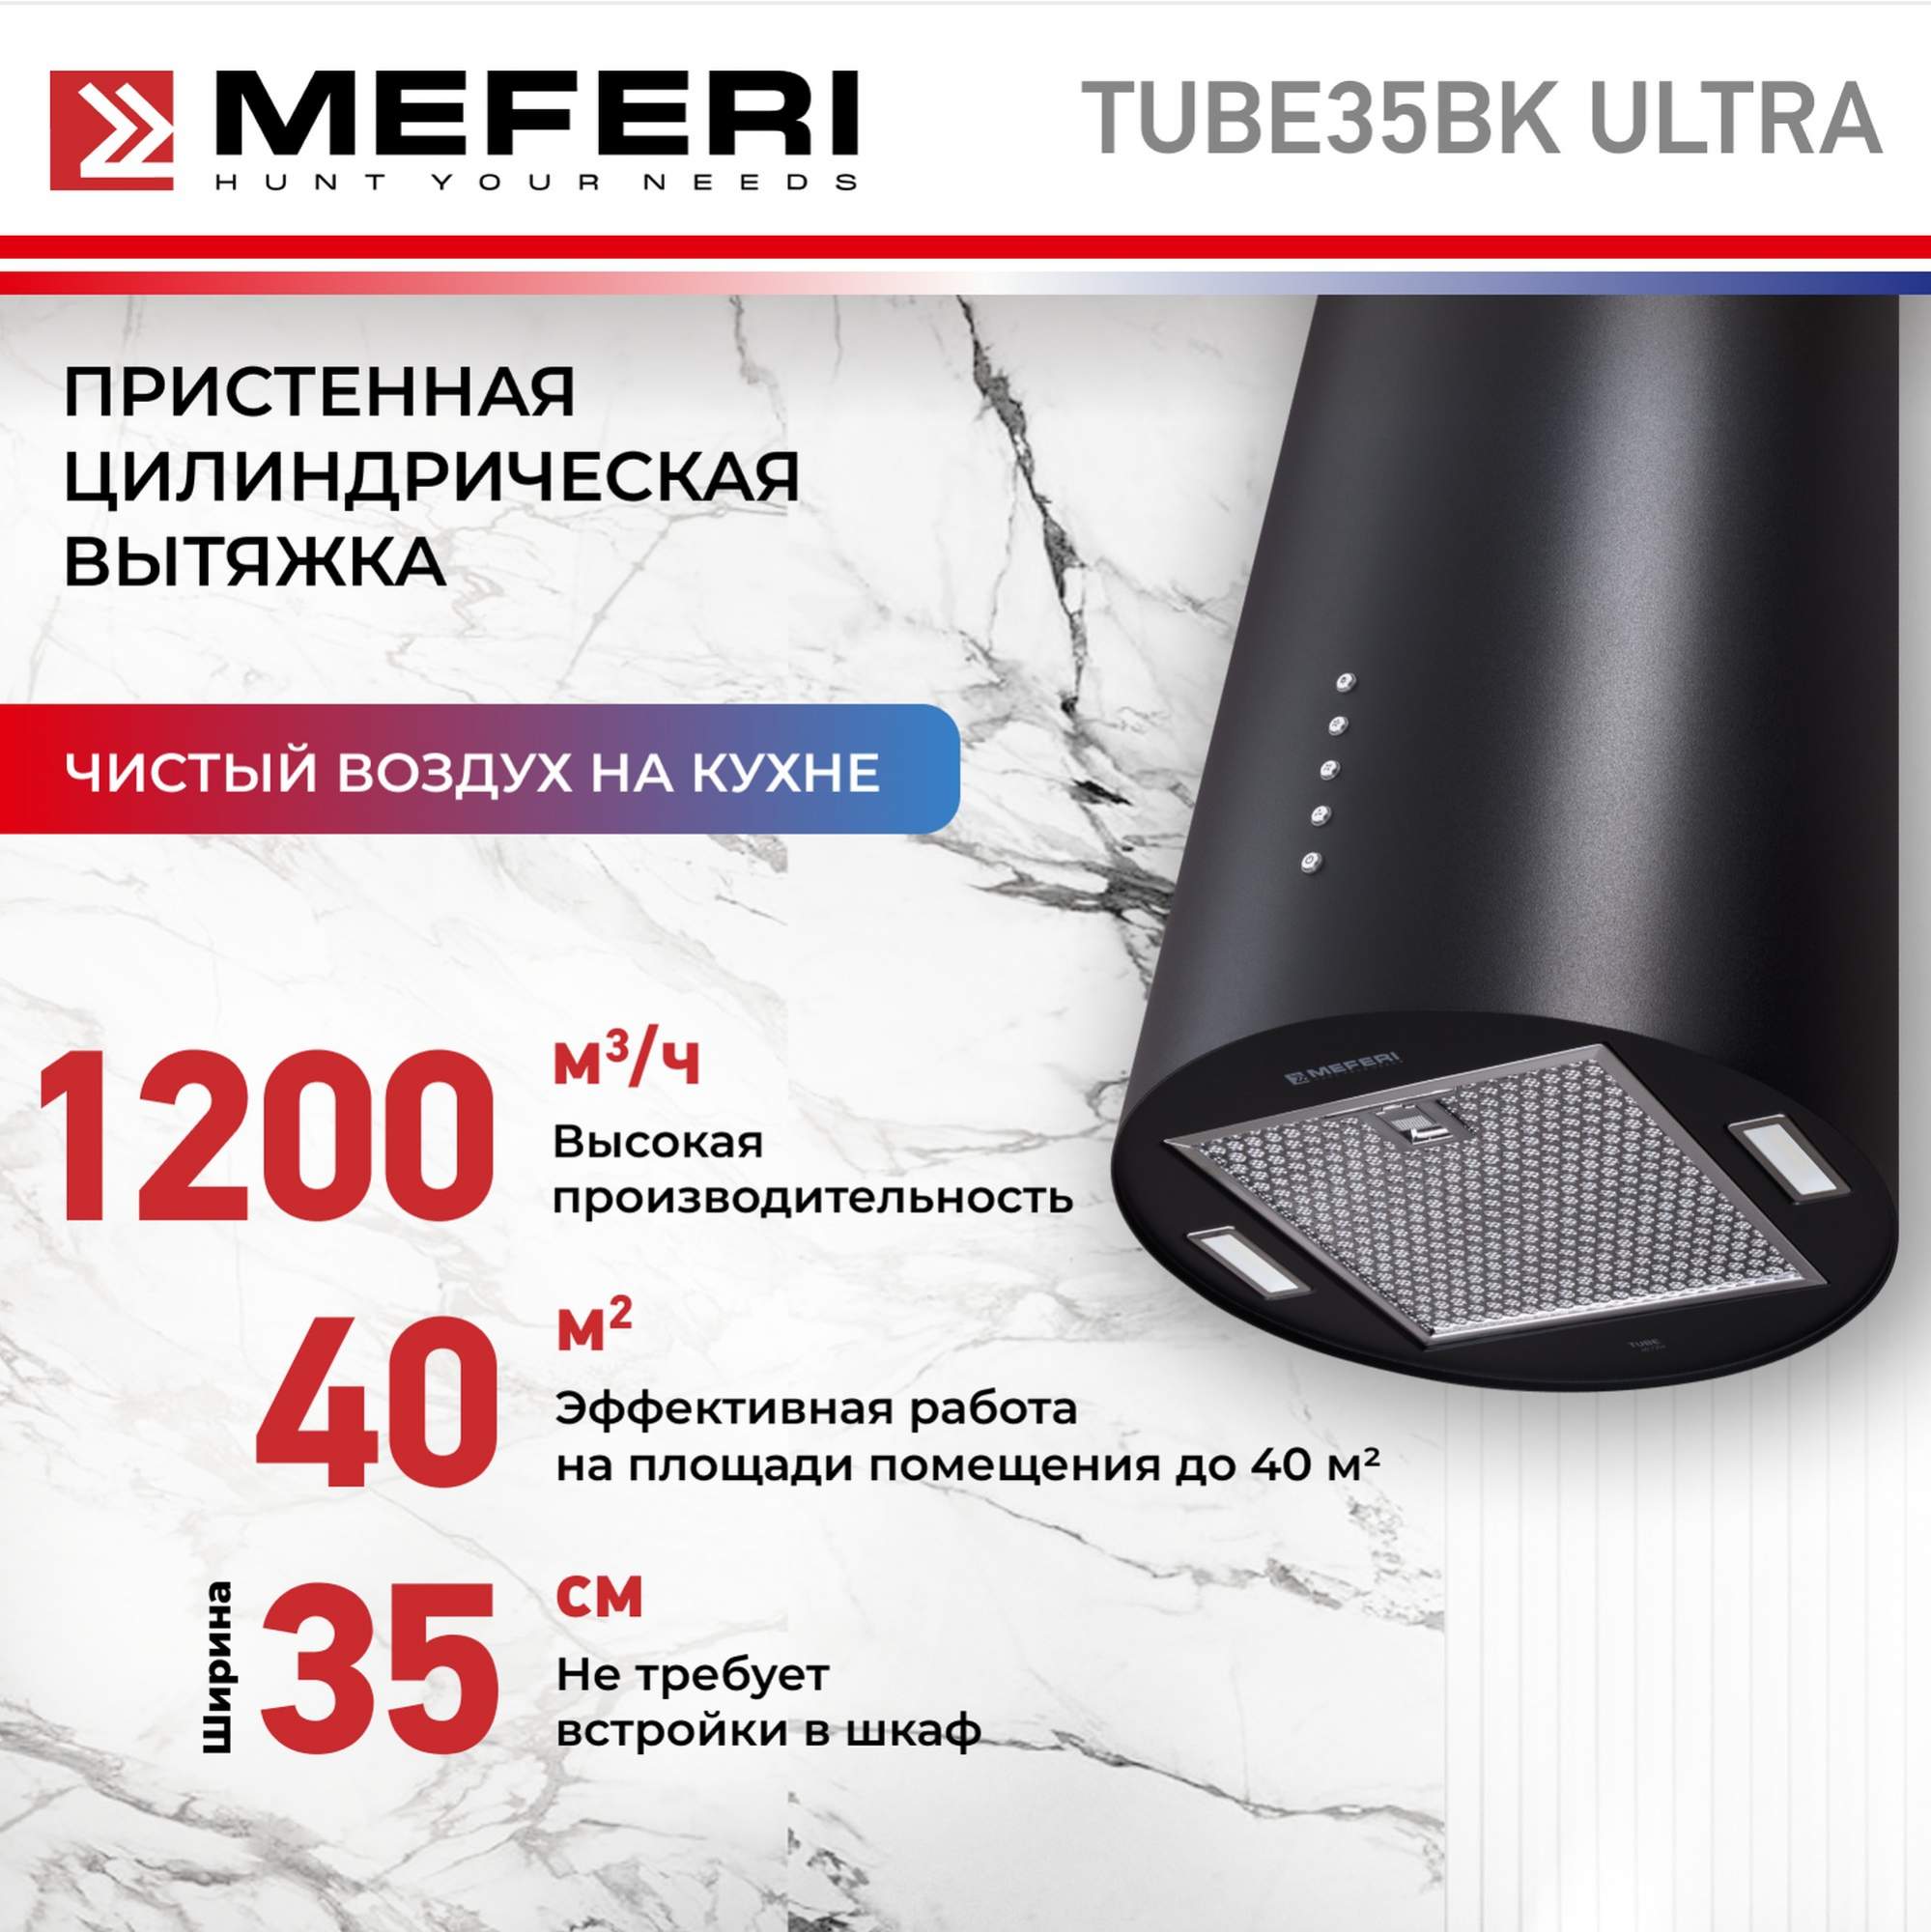 Цилиндрическая вытяжка Meferi TUBE35BK ULTRA uniview видеокамера ip цилиндрическая уличная фикс объектив 4мм 4mp smart ir 50m mic wdr 120db ultra 265 h 264 mjpeg easystar microsd poe